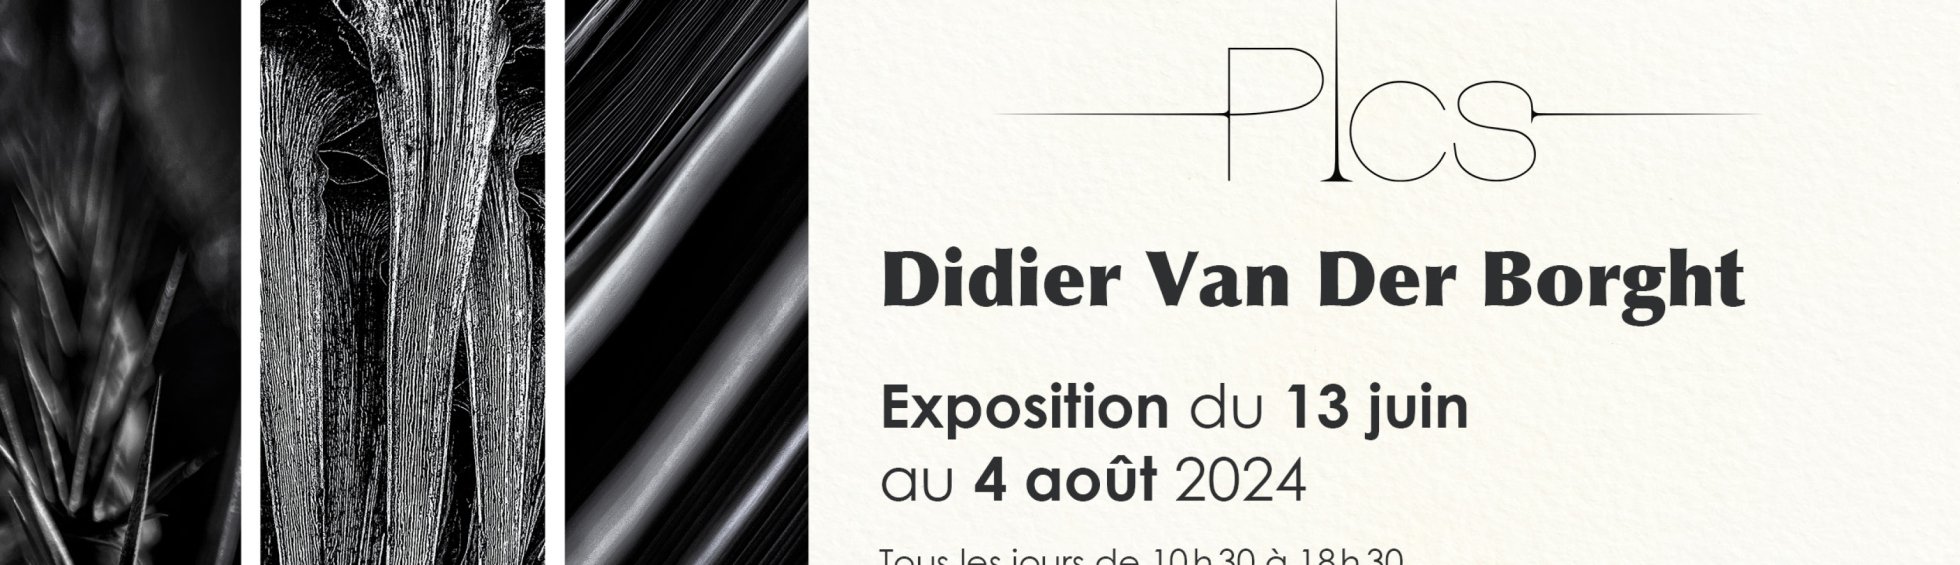 Didier Van Der Borght expose cet été !